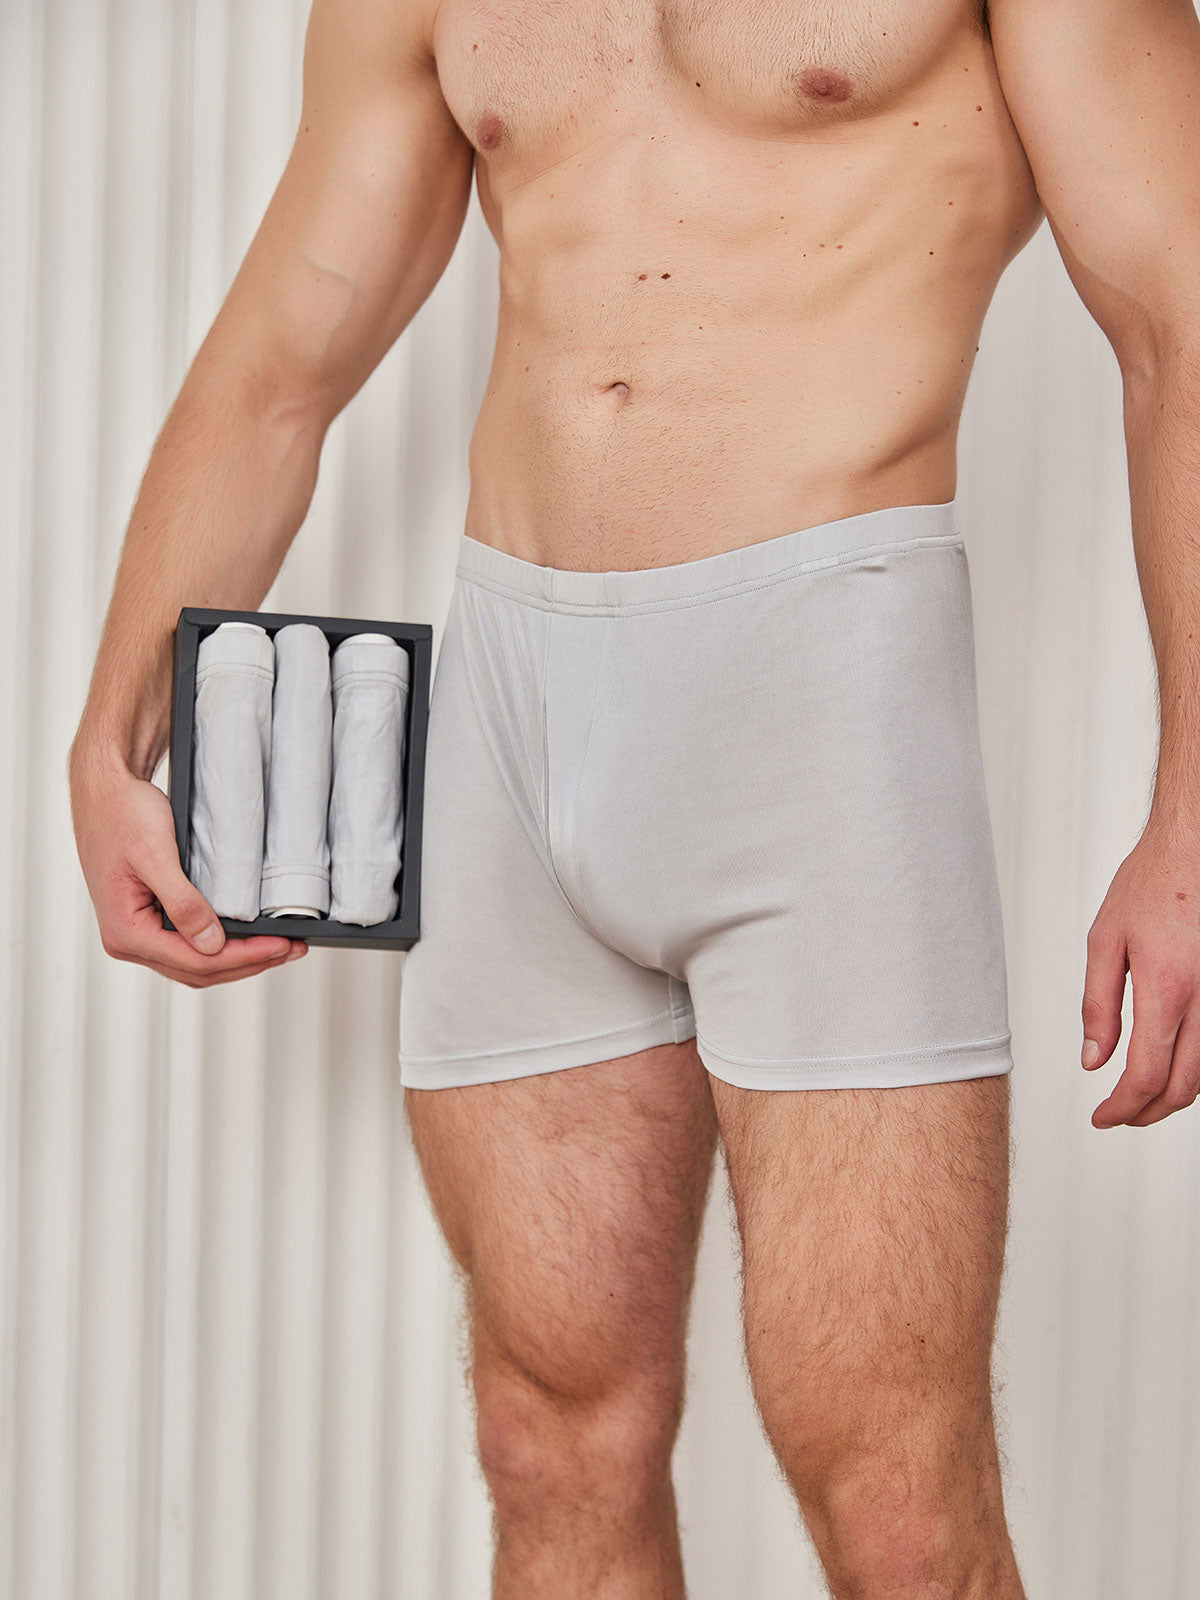 4pcs Underwear Mens Boxers 100% Cotton Sleep Underpants Men